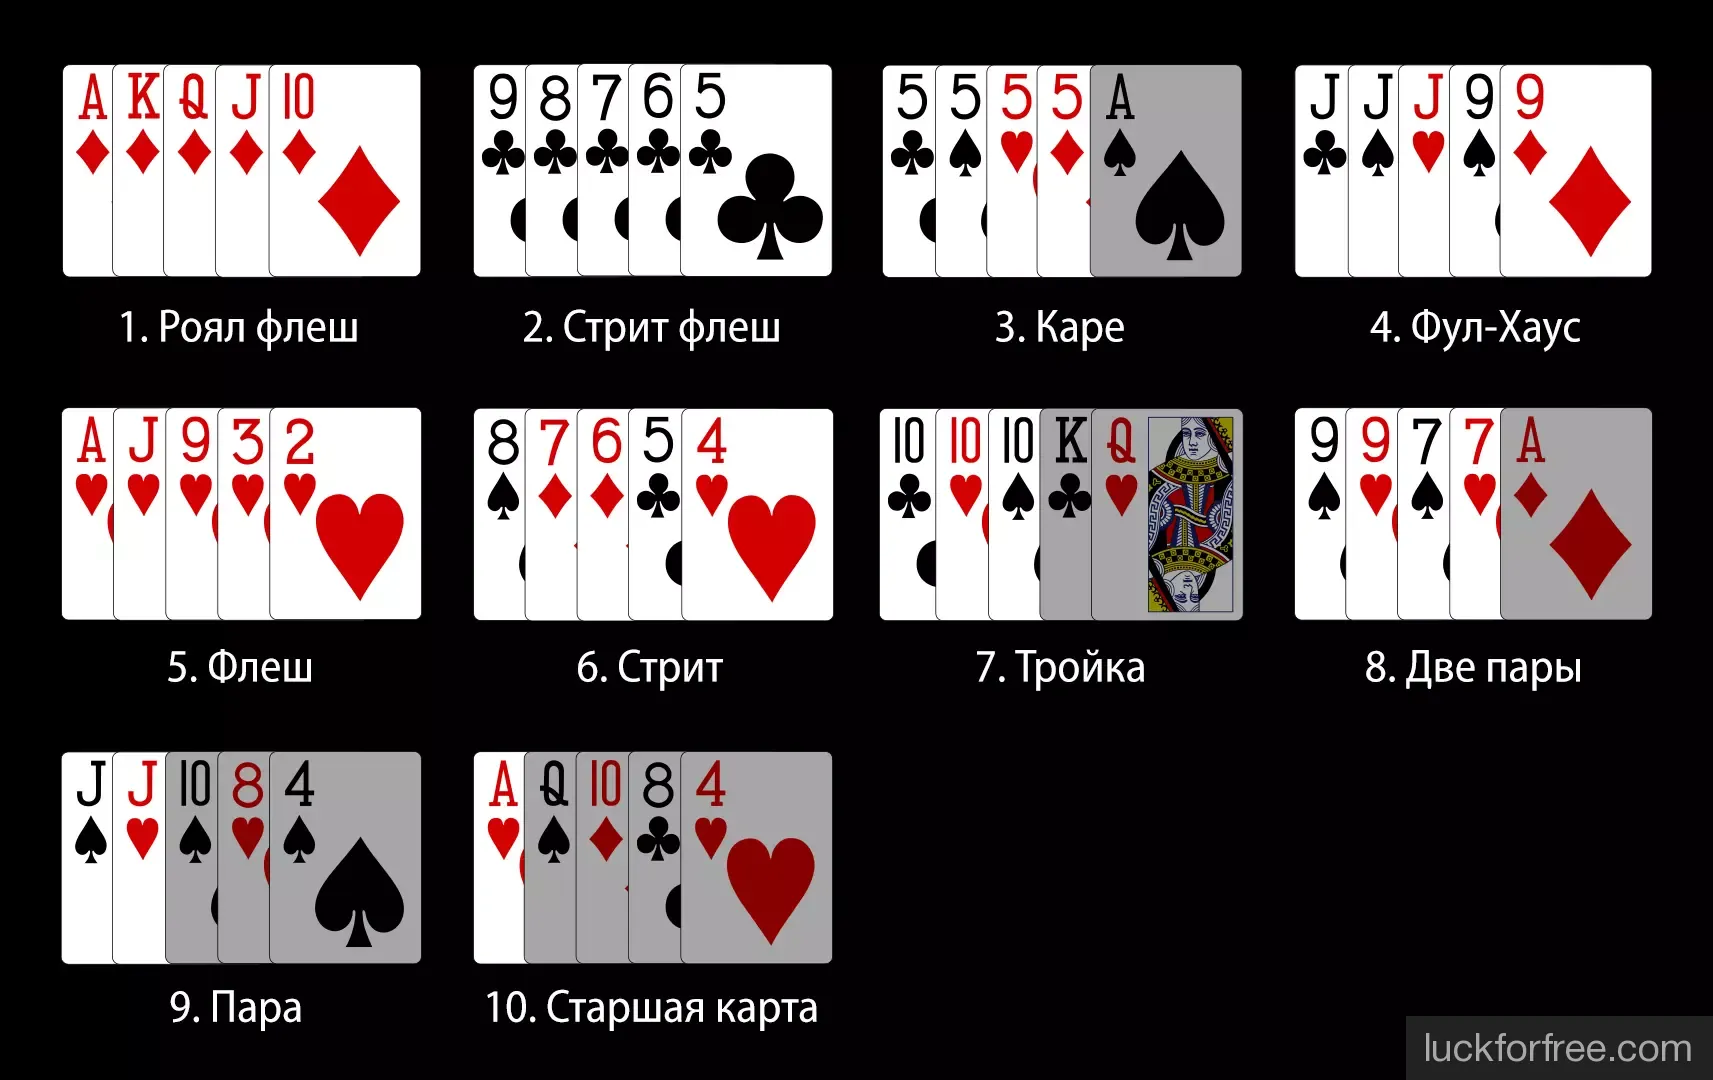 Покер 5 карт как играть лучшие стратегии лайв ставок на спорт